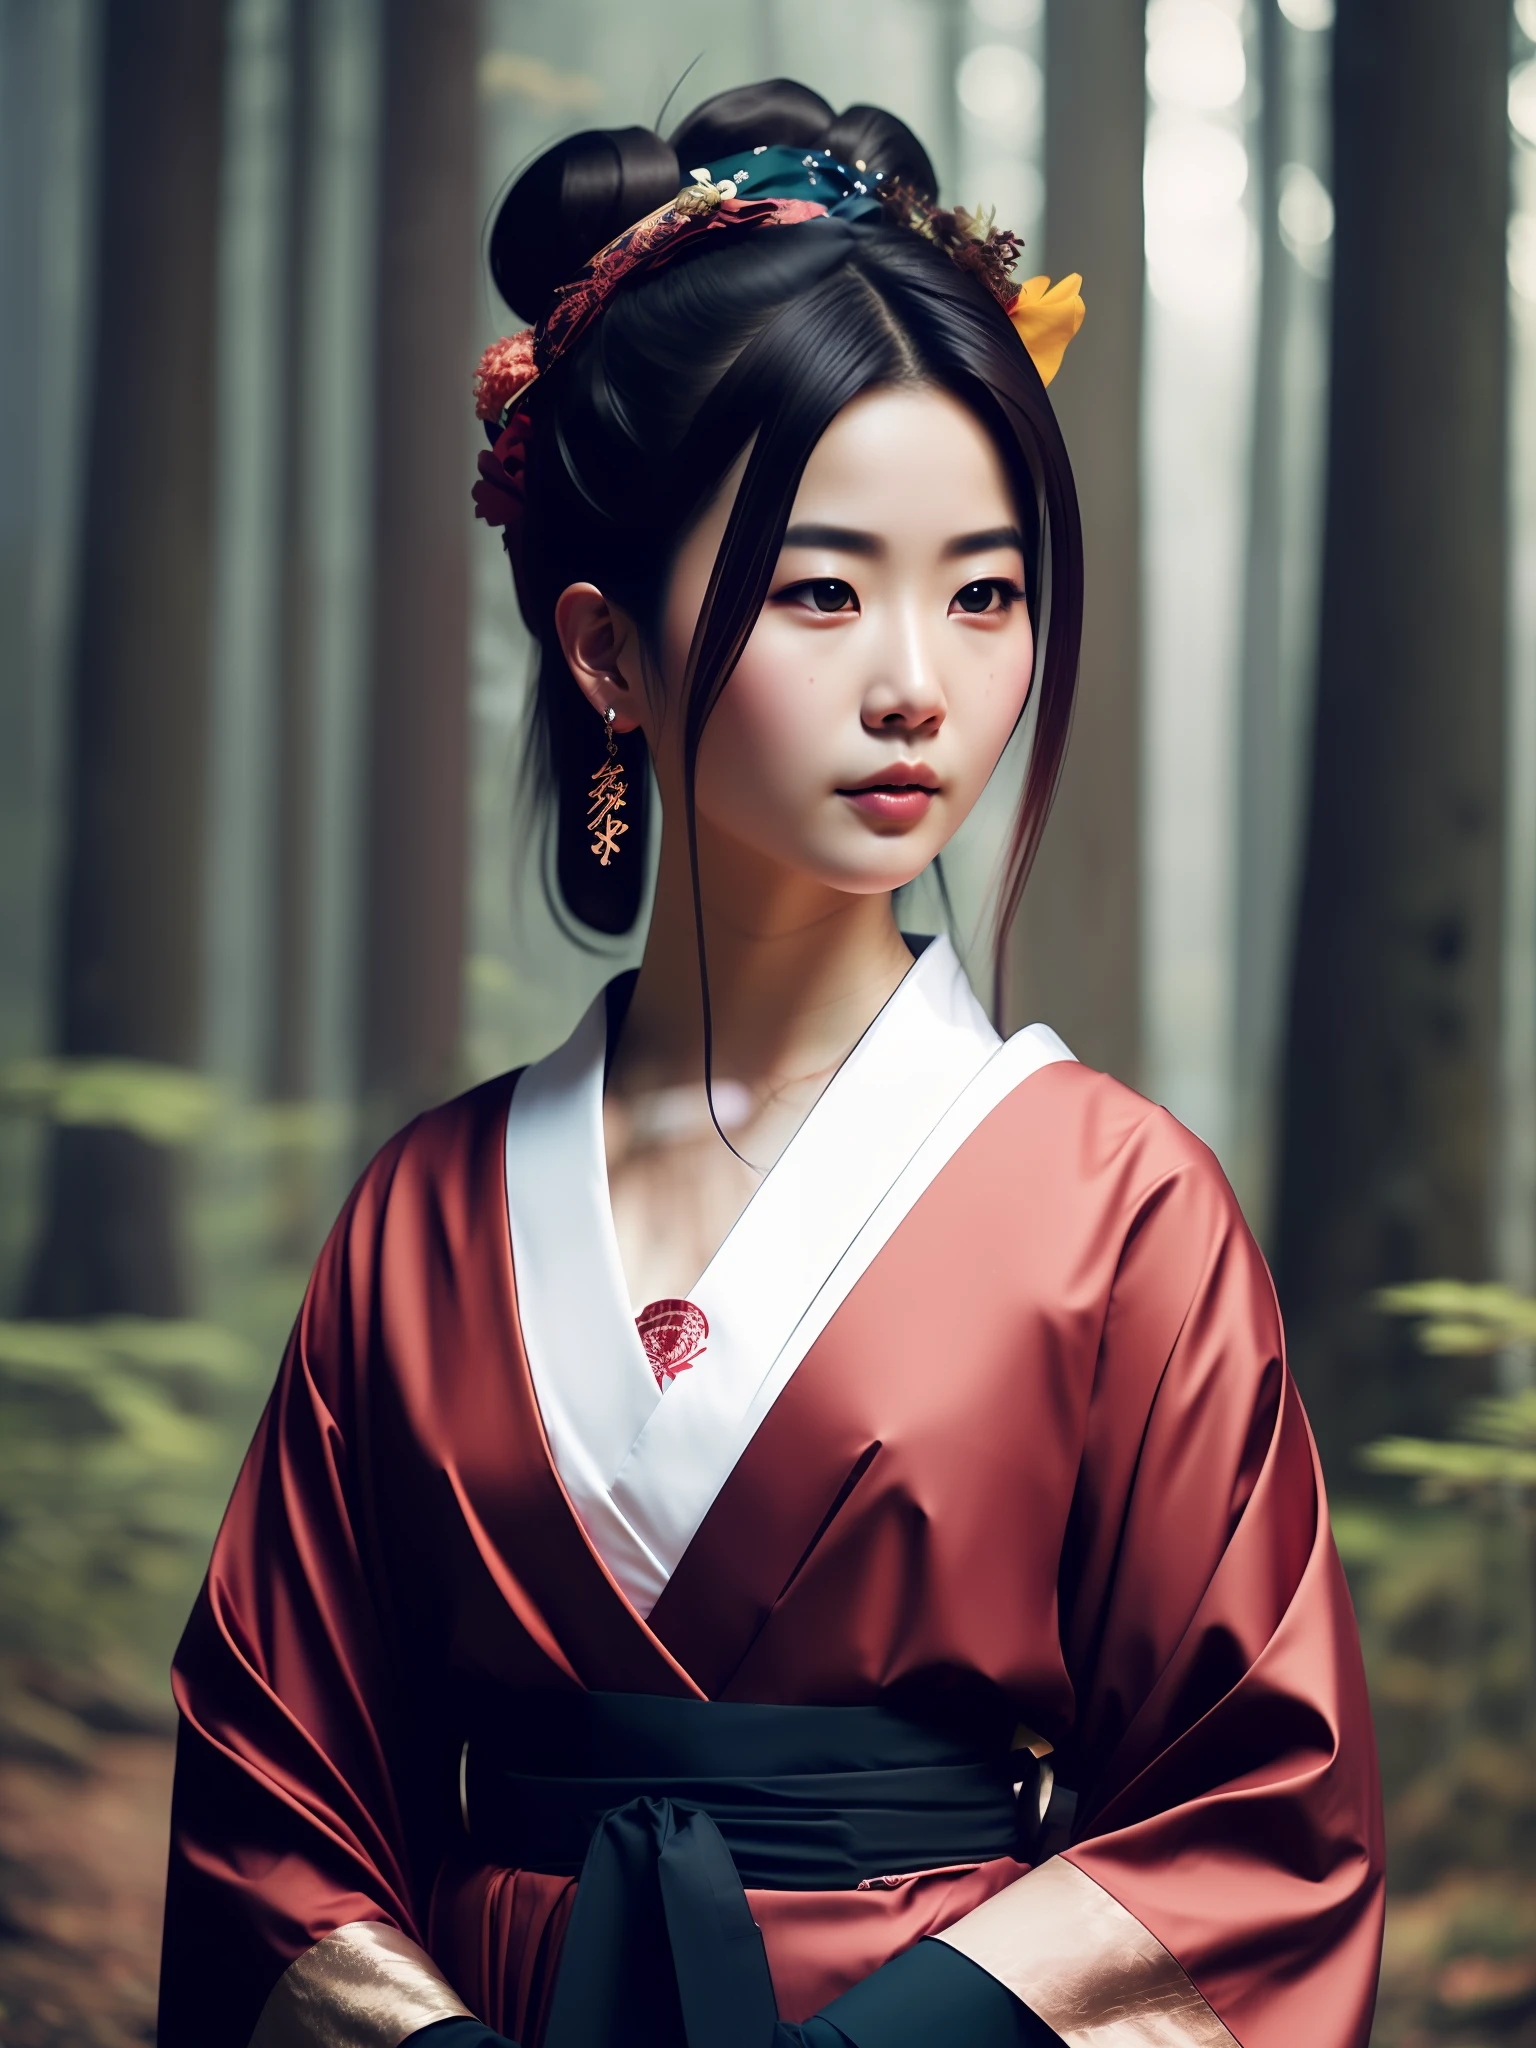 verdammt_Science-Fiction_v2, Porträt einer jungen, sehr schönen japanischen Gueisha, vor einem rauchigen Wald, farbenprächtige Kleidung und japanischer Regenschirm, Nahaufnahme, geheimnisvolle Pose und Haltung. verdammt_Kino_v2